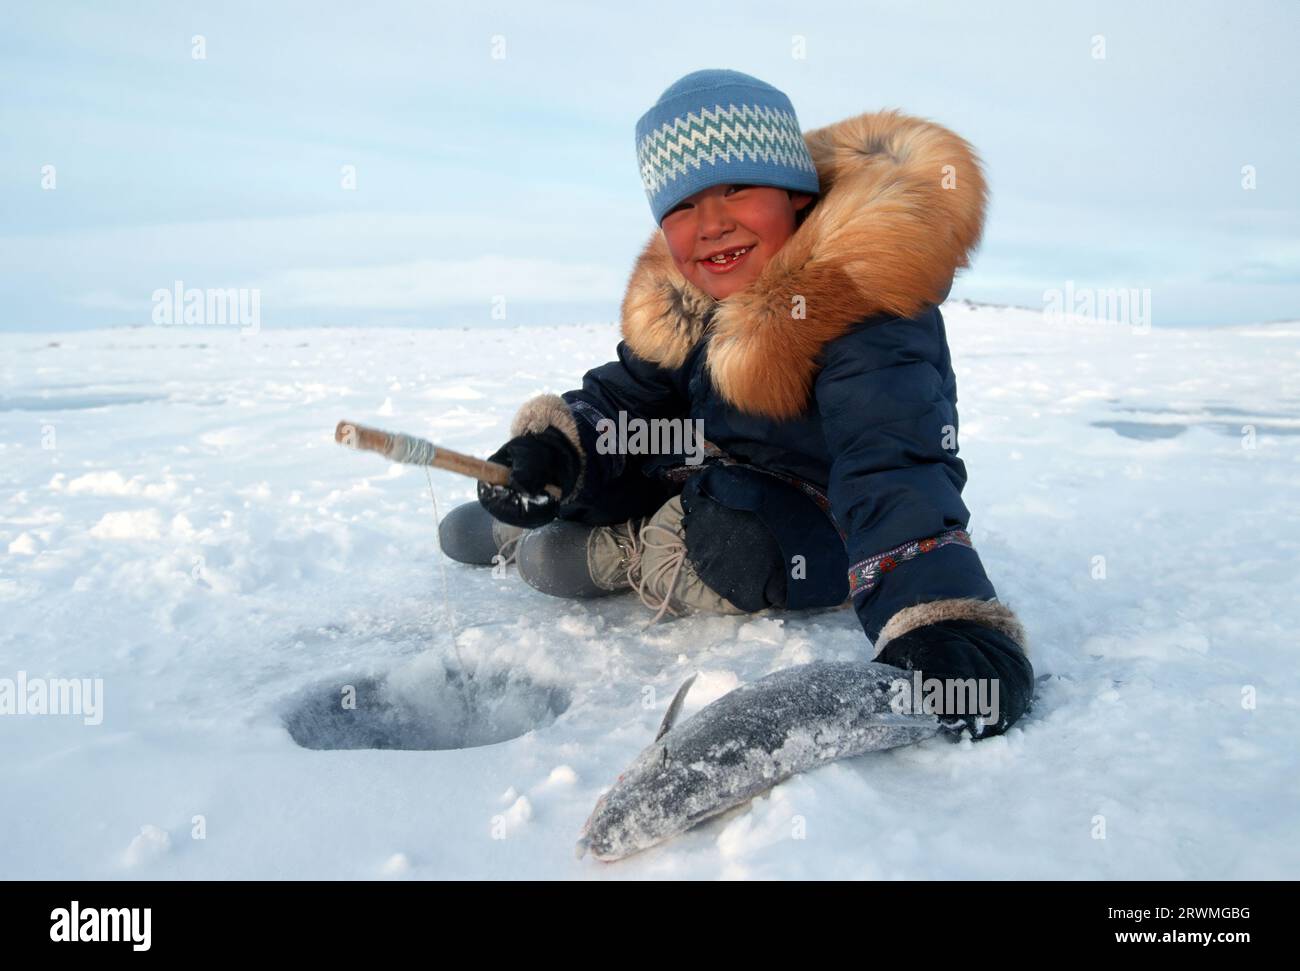 Kanada, CAN, Inuit Eskimosjunge fischt mit einer Angel durch ein Loch im Eis auf einem SEE a Nunavik, Provinz Quebec, Nord-Kanada | Inuit boy fishing through a hole on a Lake in Nunavik, Quebec Province, North-Canada Foto Stock